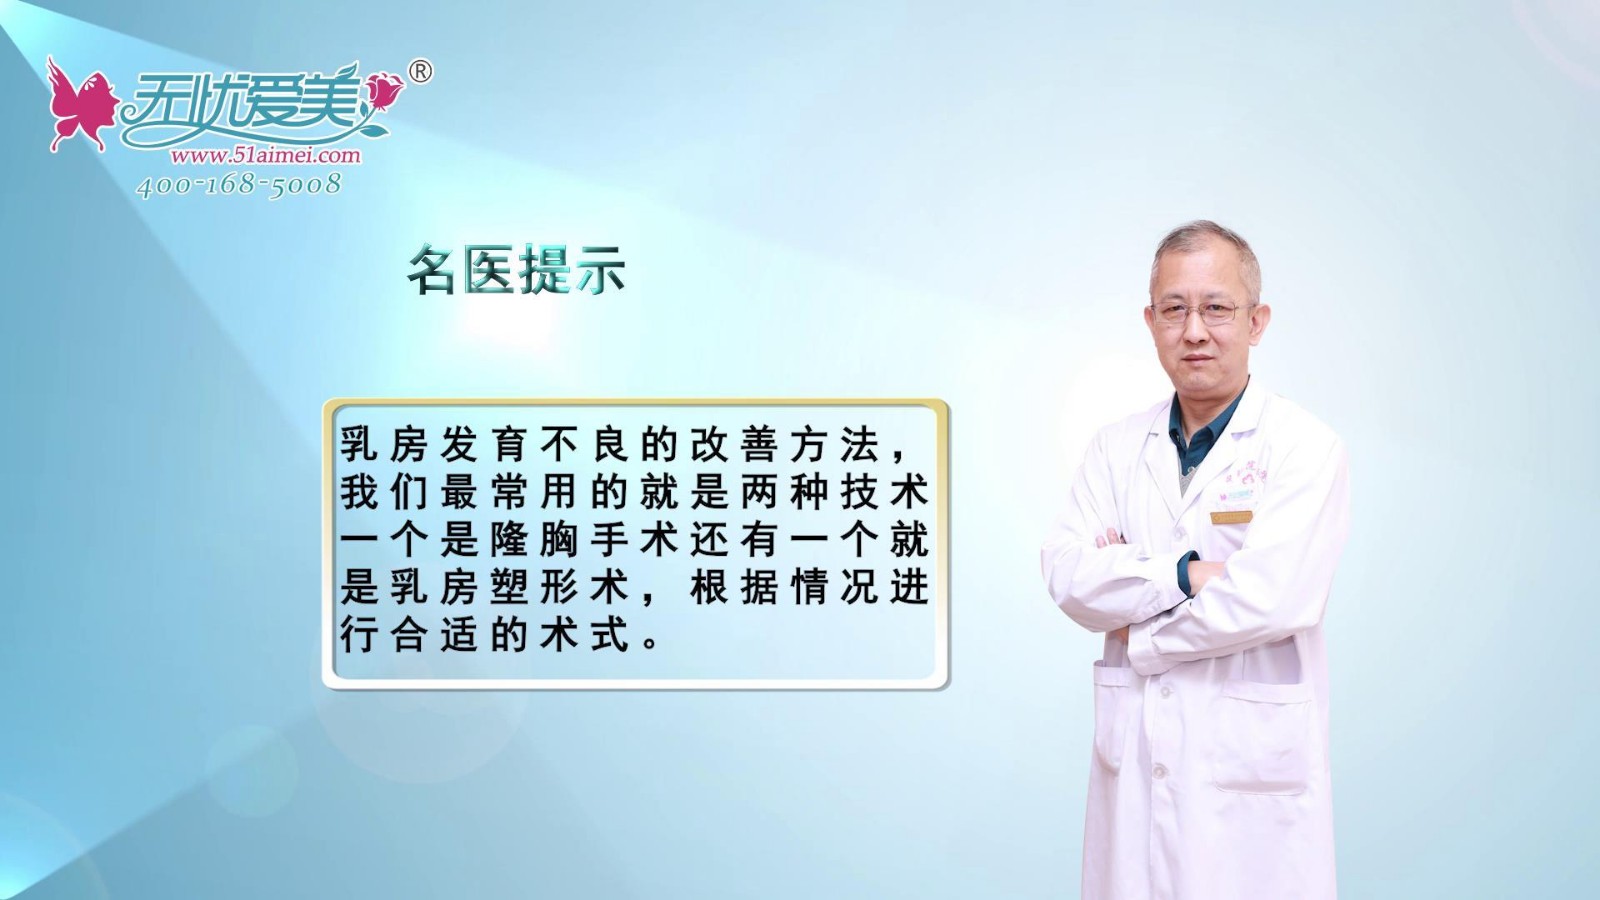 山西整形外科刘晋元主任在线分享乳房发育不良的改善方法